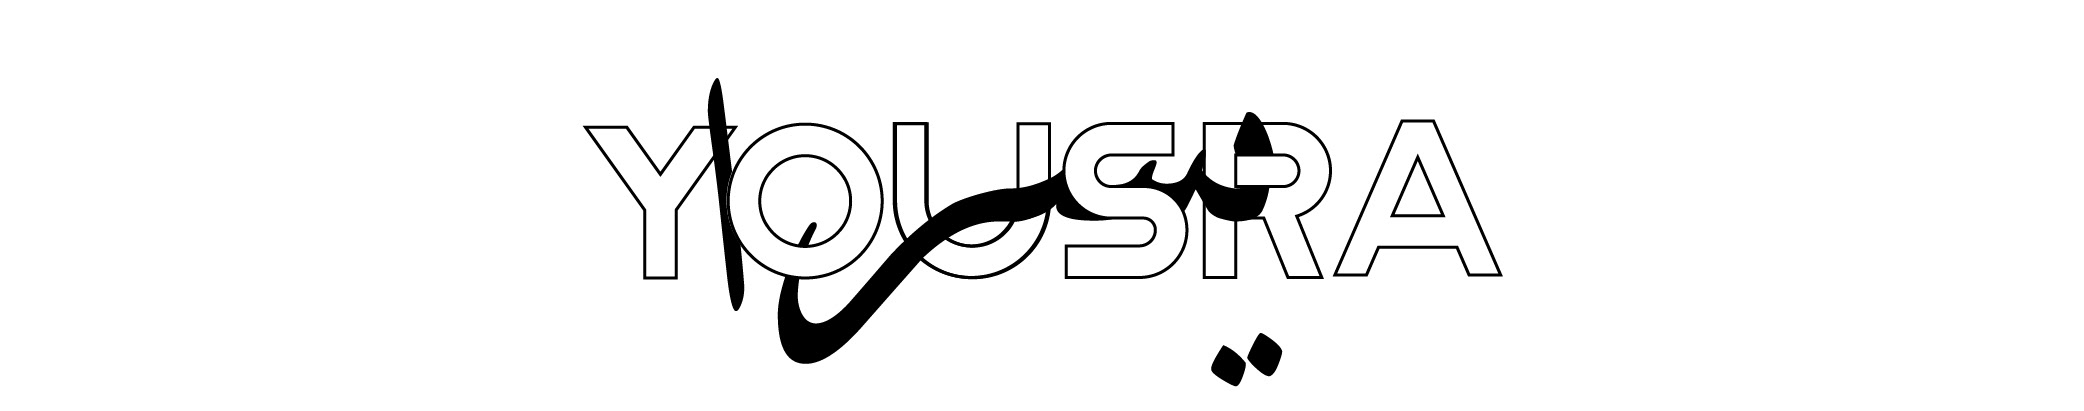 Yousra Ali's profile banner